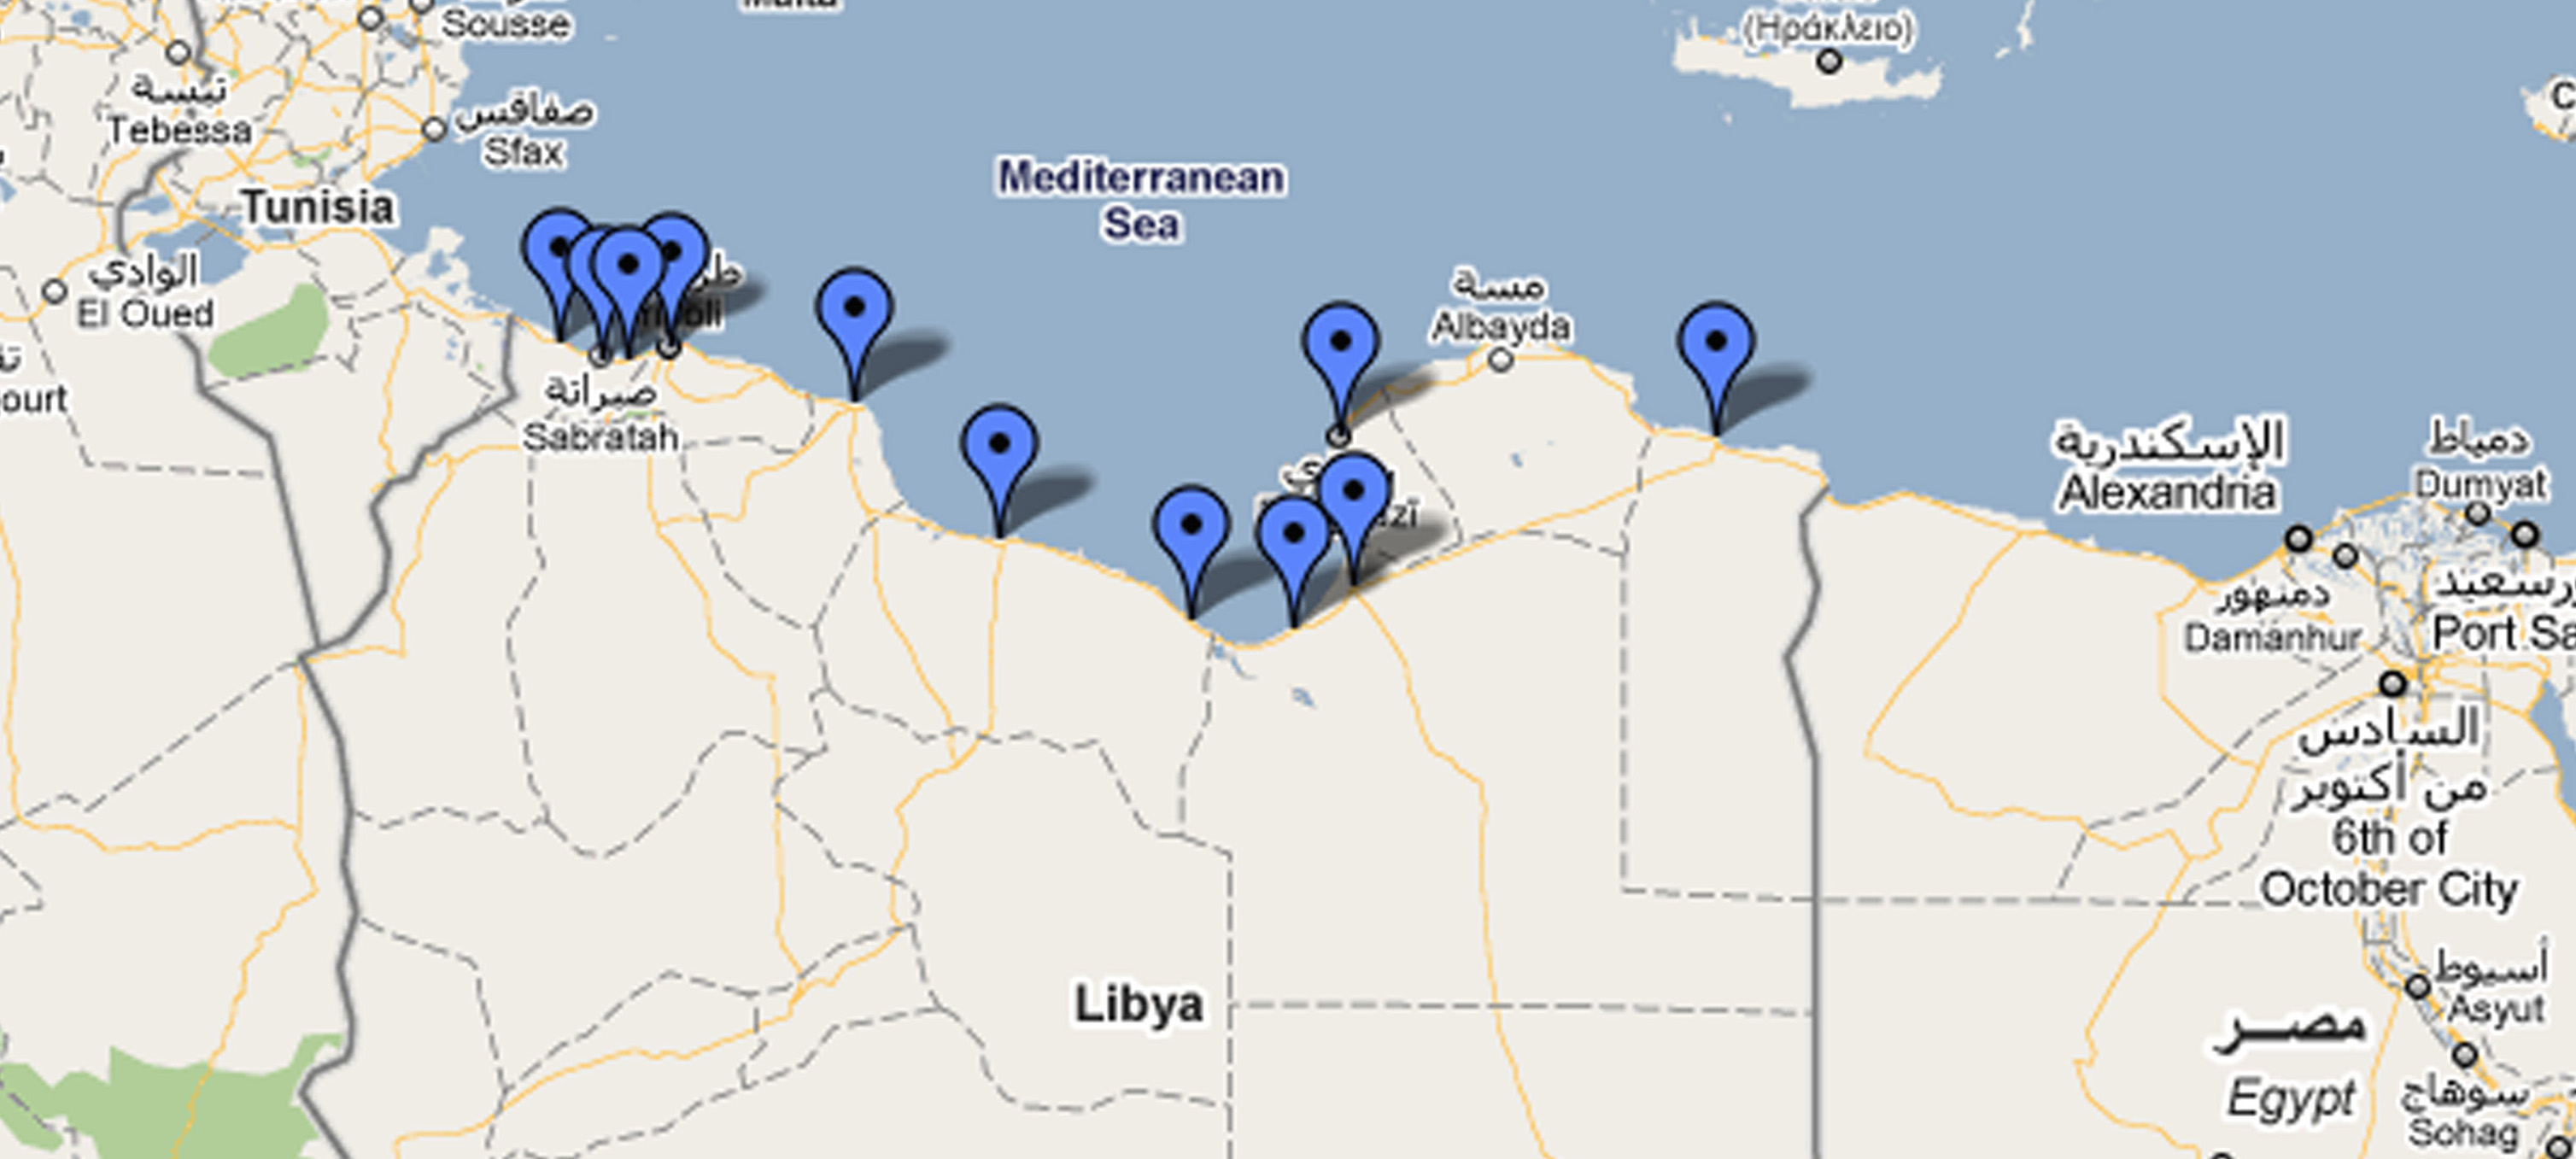 La mappa dei pozzi petroliferi in Libia